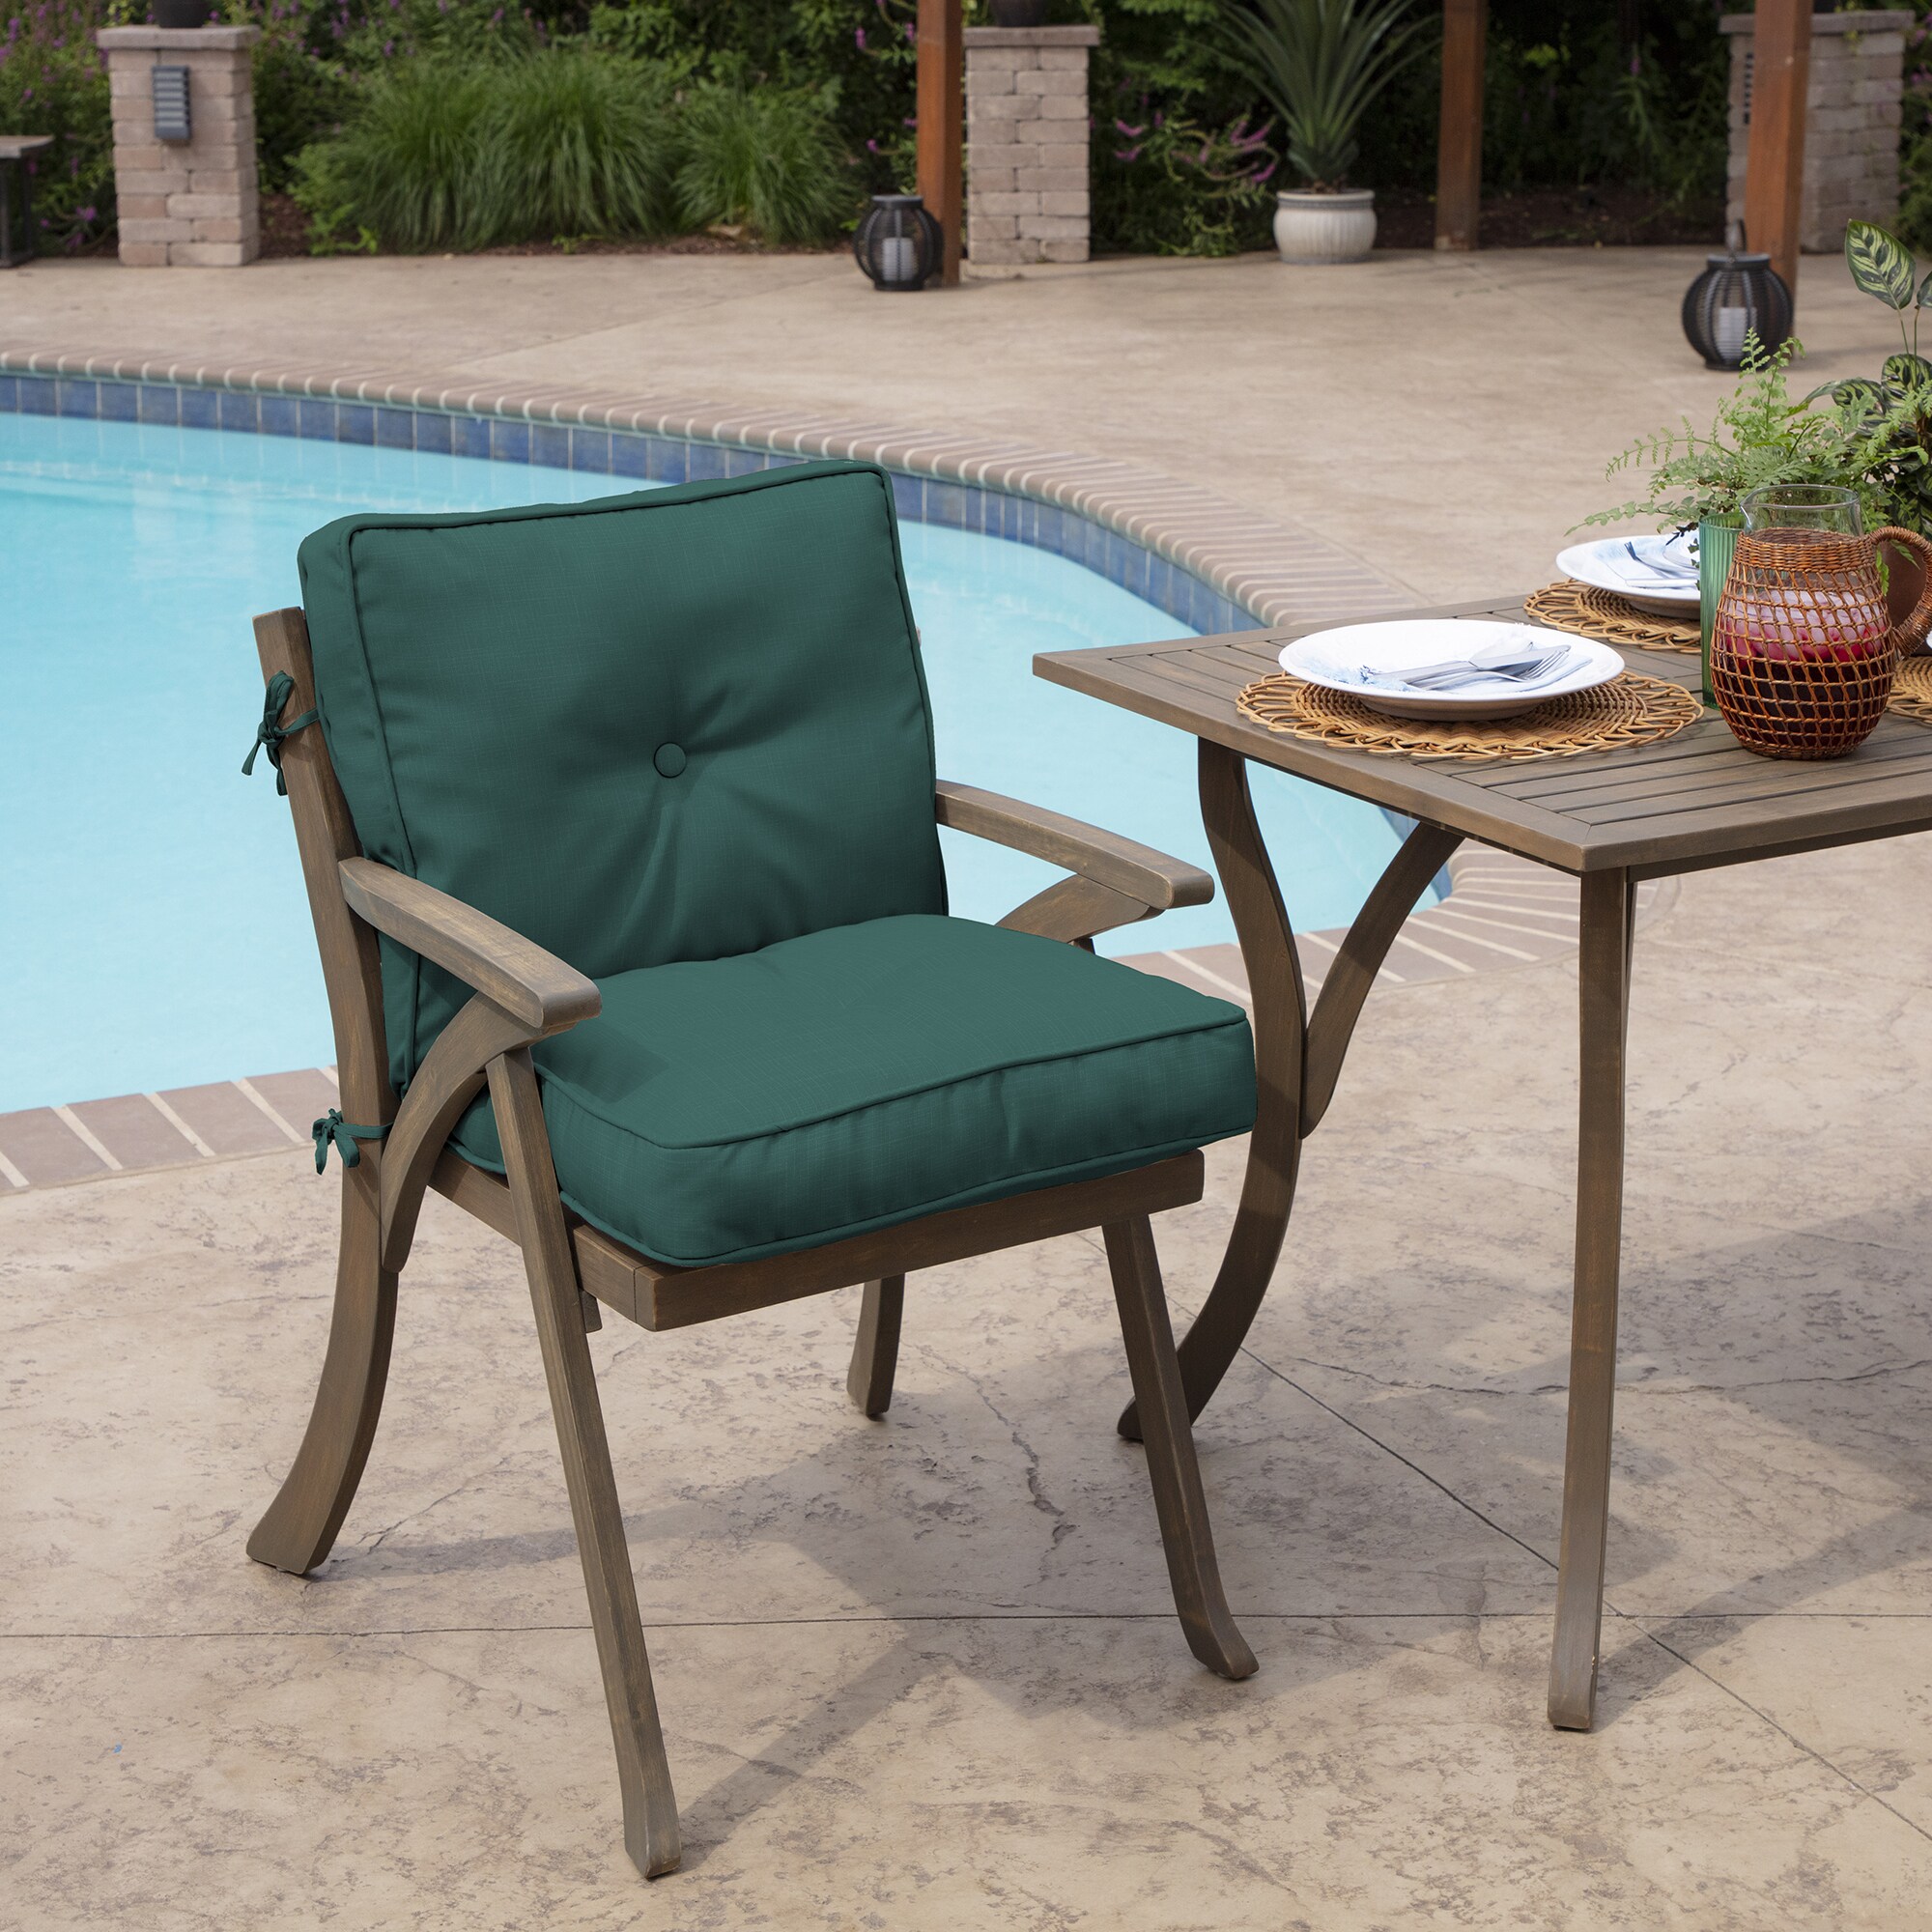 Arden Selections Outdoor Bench Cushion 18 x 48, Peacock Blue Green Texture